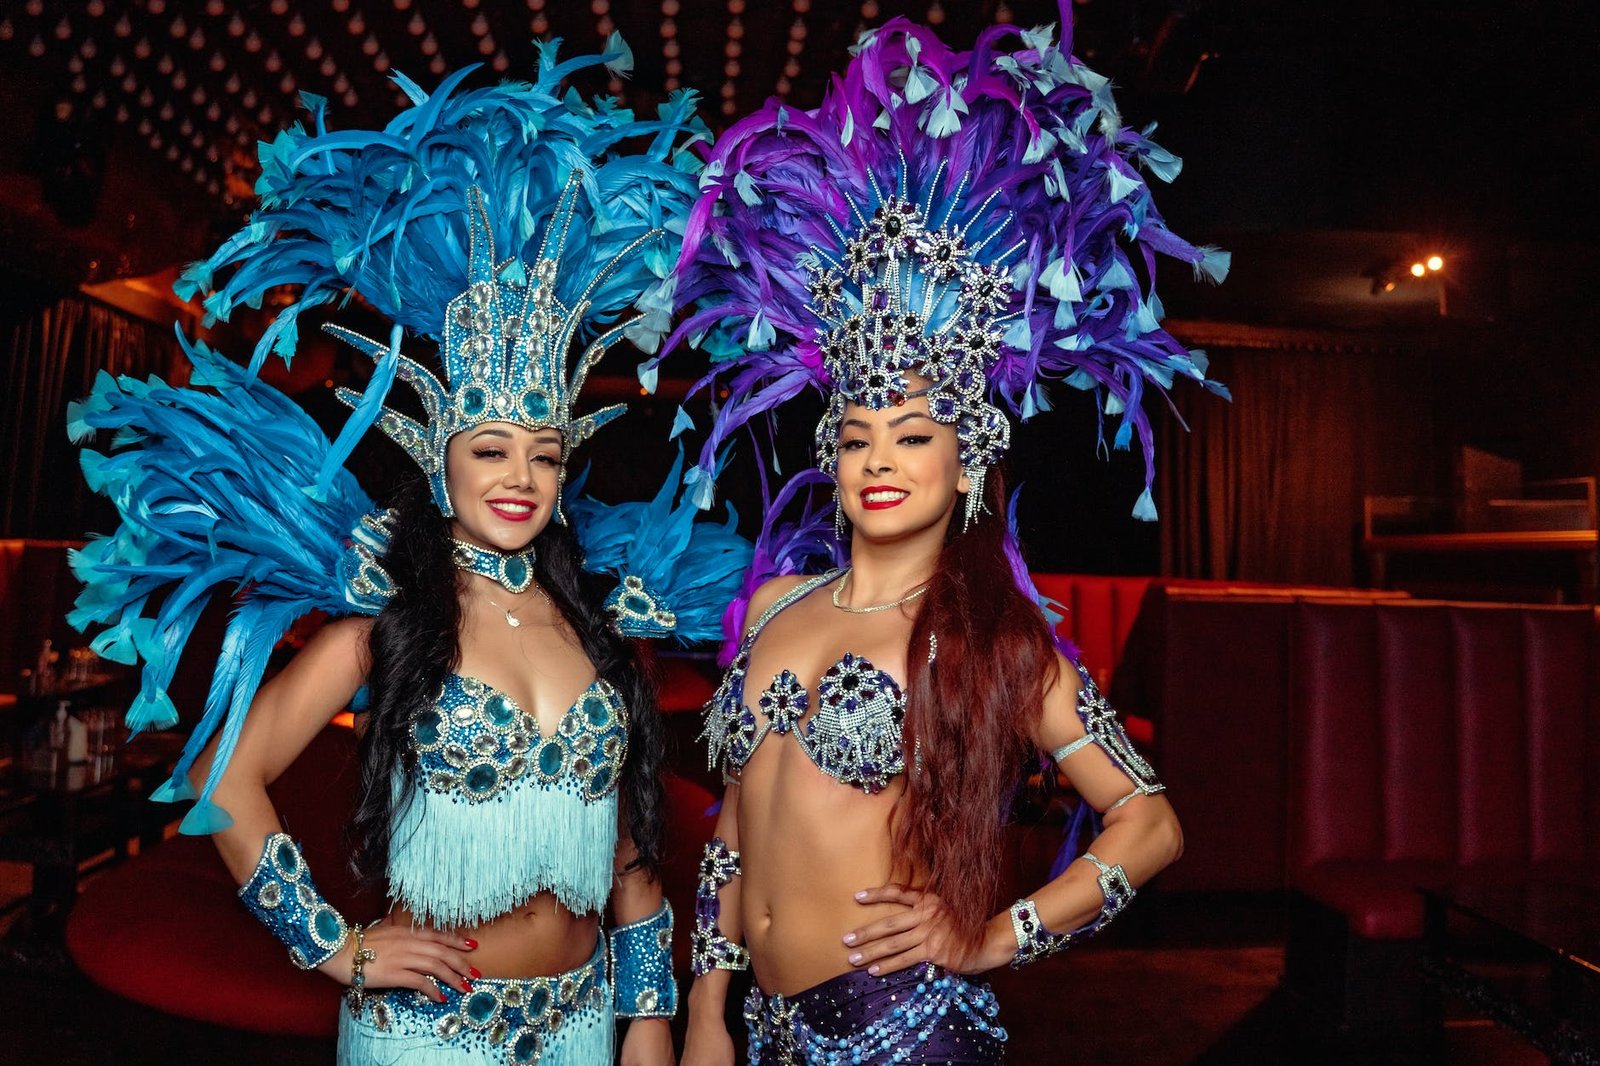 women in samba costumes